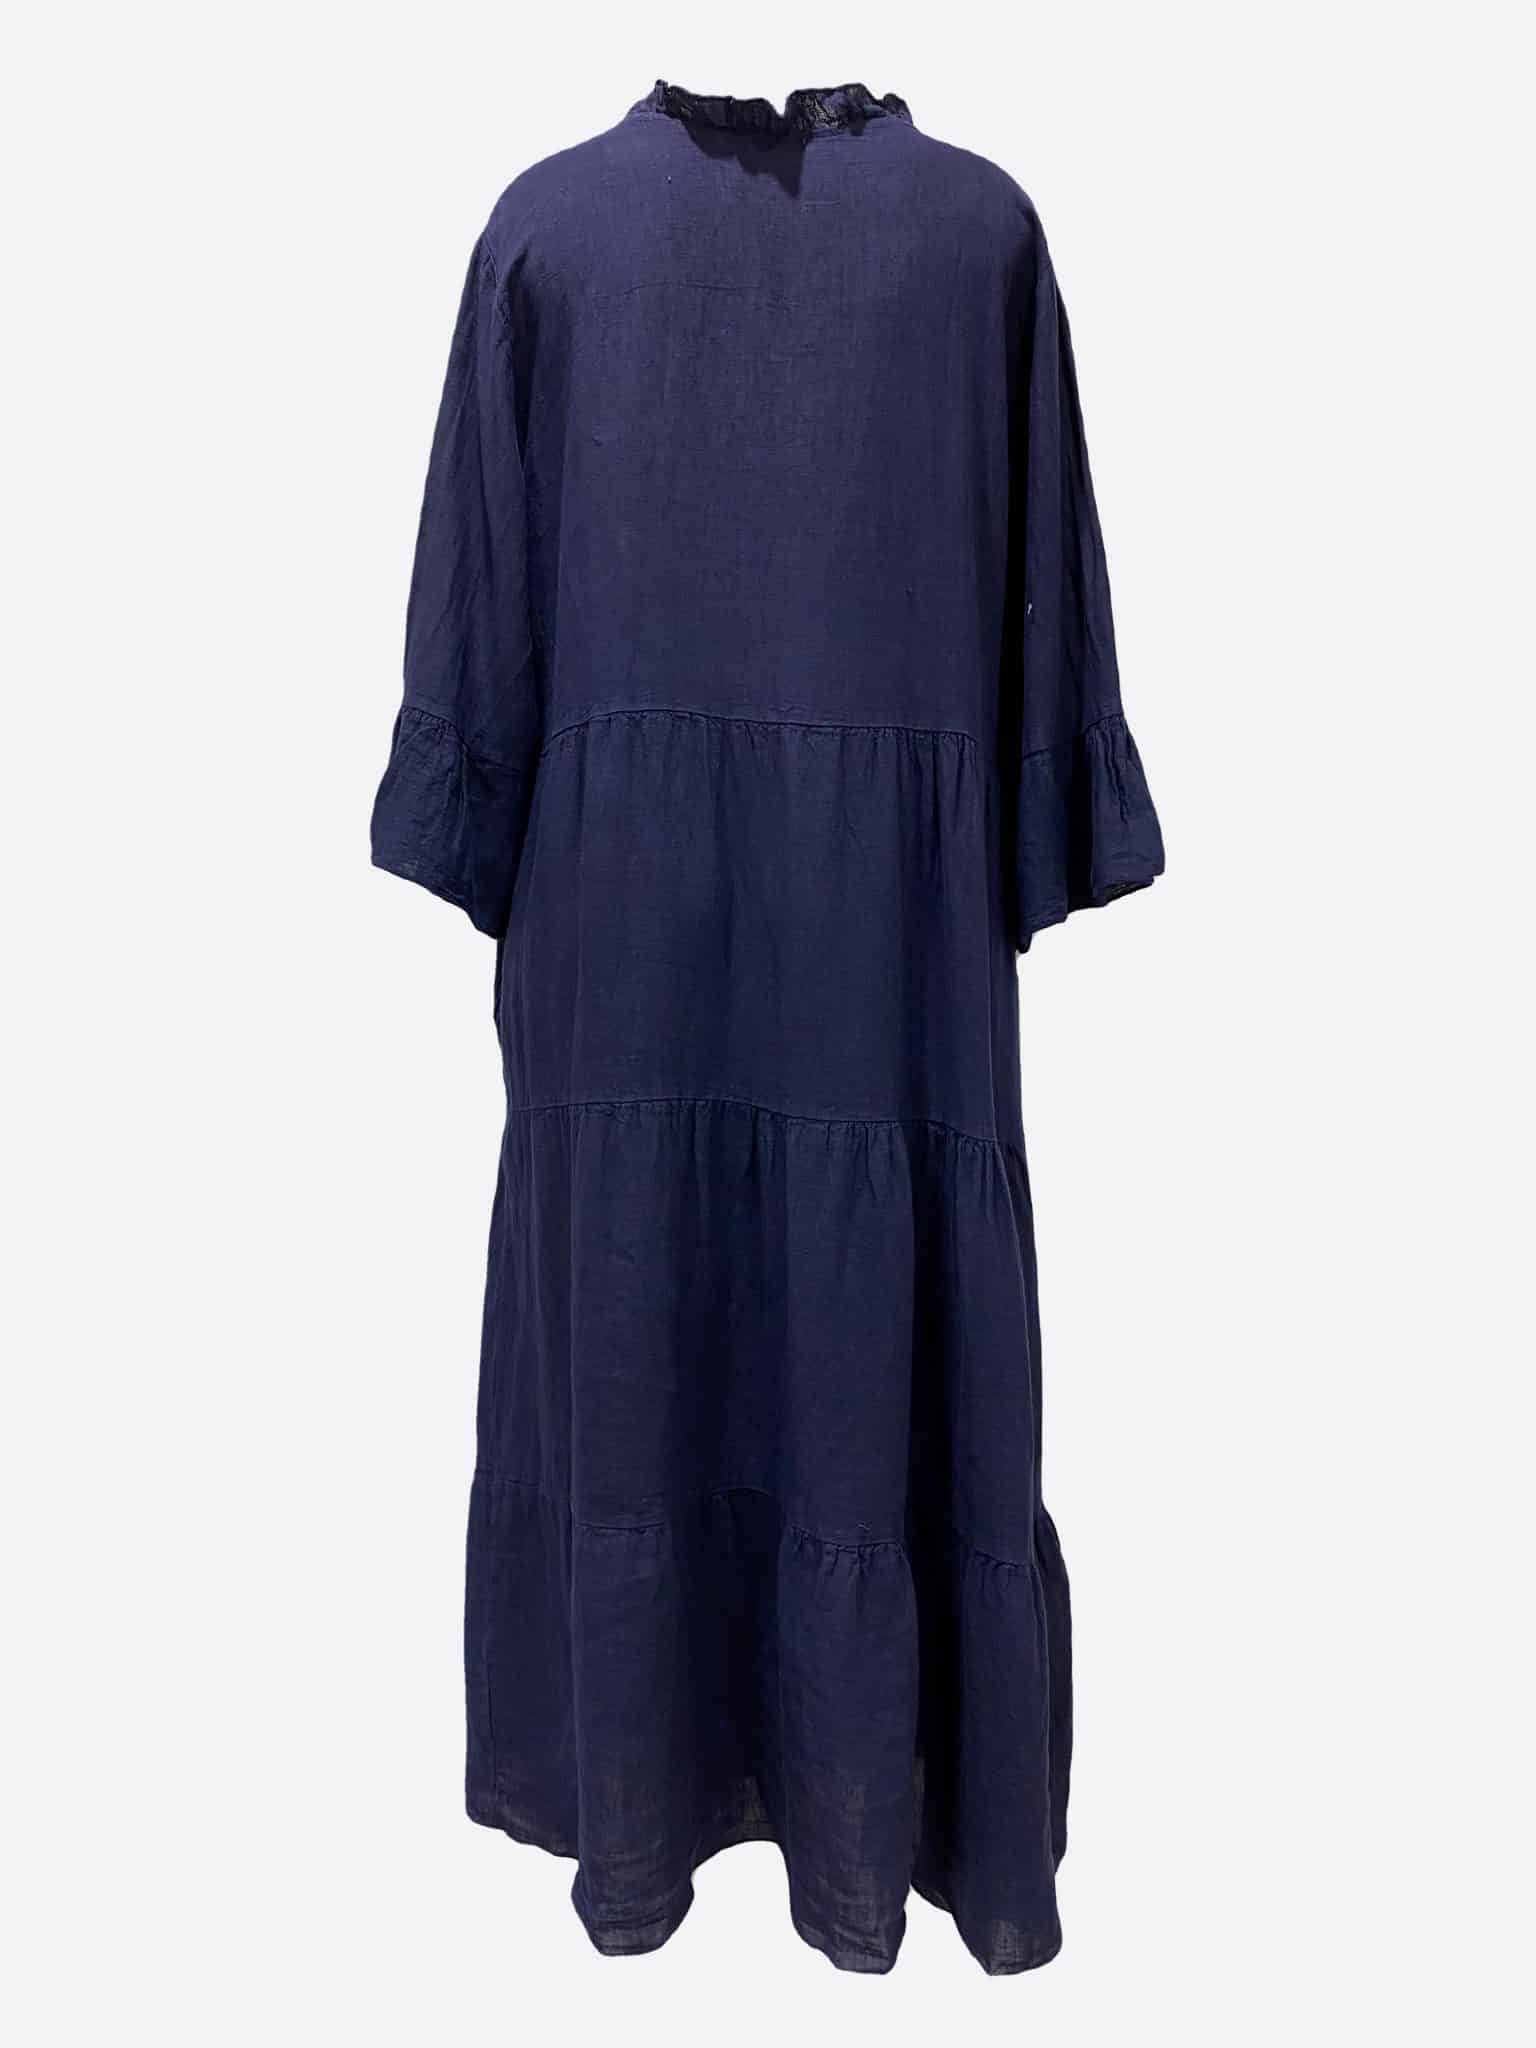 Linen Tier Dress - Florence Store - Women's Boutique Fashion - Online ...